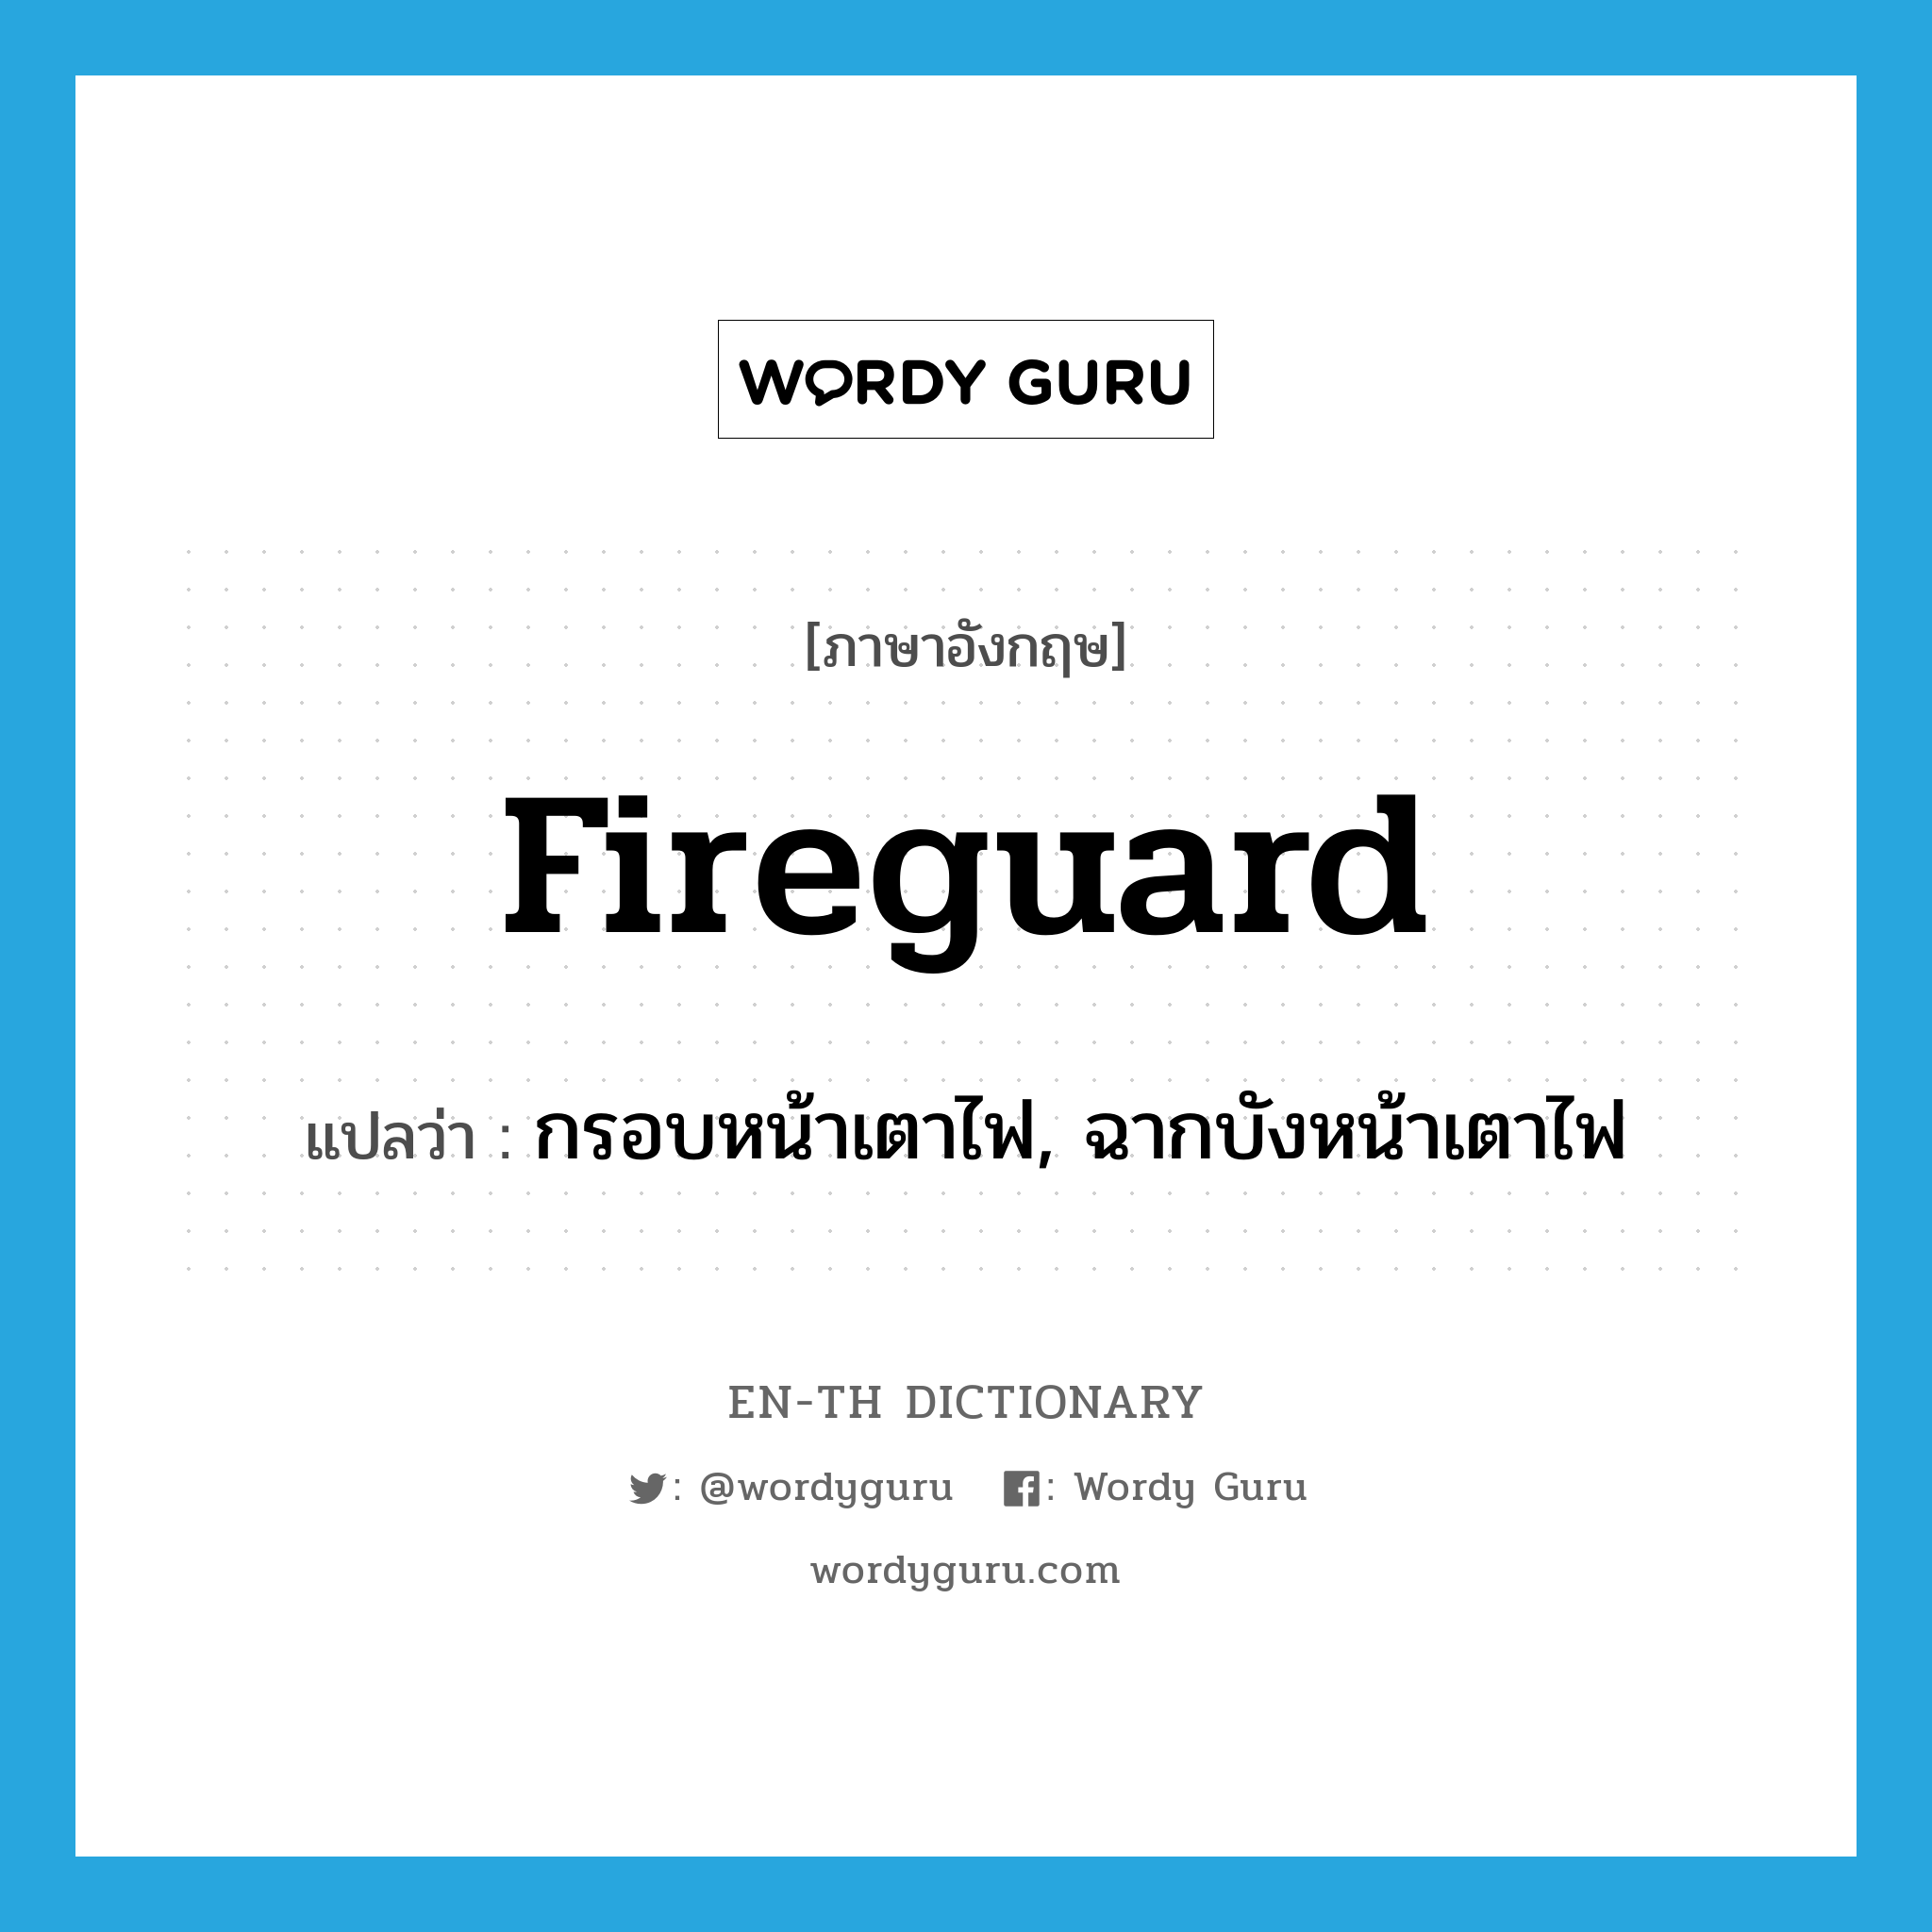 กรอบหน้าเตาไฟ, ฉากบังหน้าเตาไฟ ภาษาอังกฤษ?, คำศัพท์ภาษาอังกฤษ กรอบหน้าเตาไฟ, ฉากบังหน้าเตาไฟ แปลว่า fireguard ประเภท N หมวด N